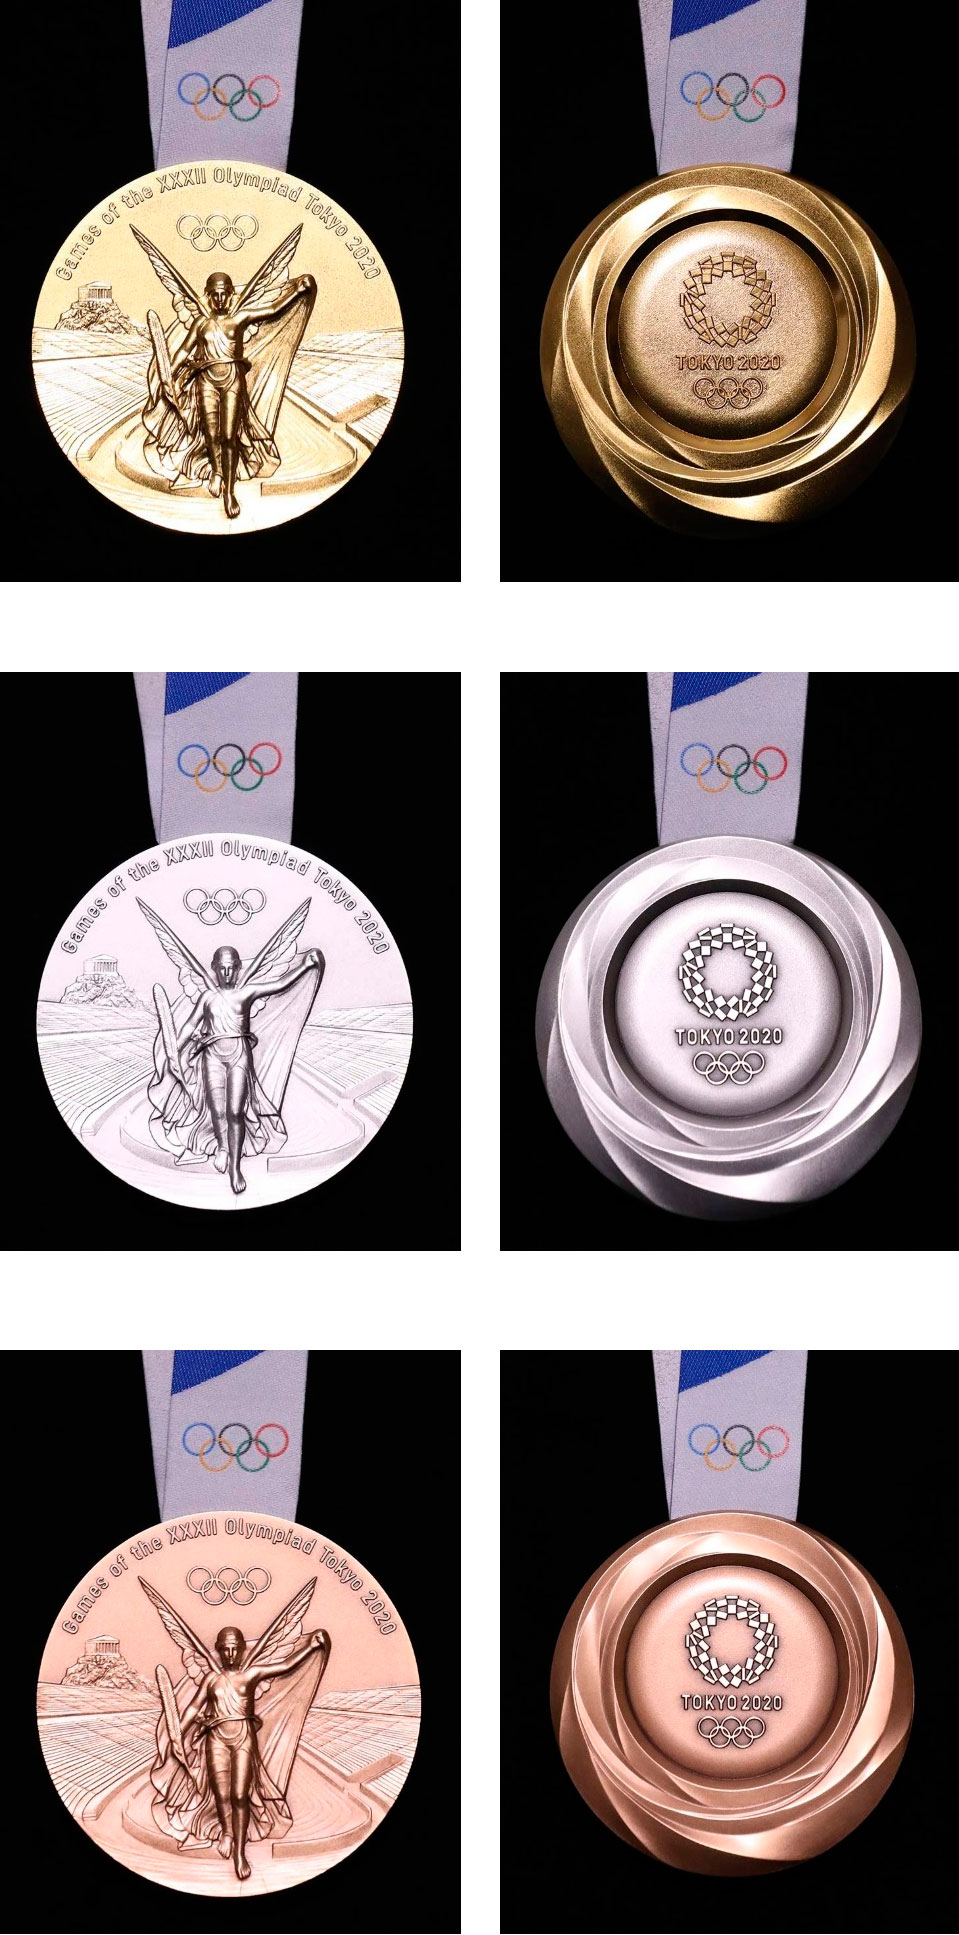 медали Токио - 2020